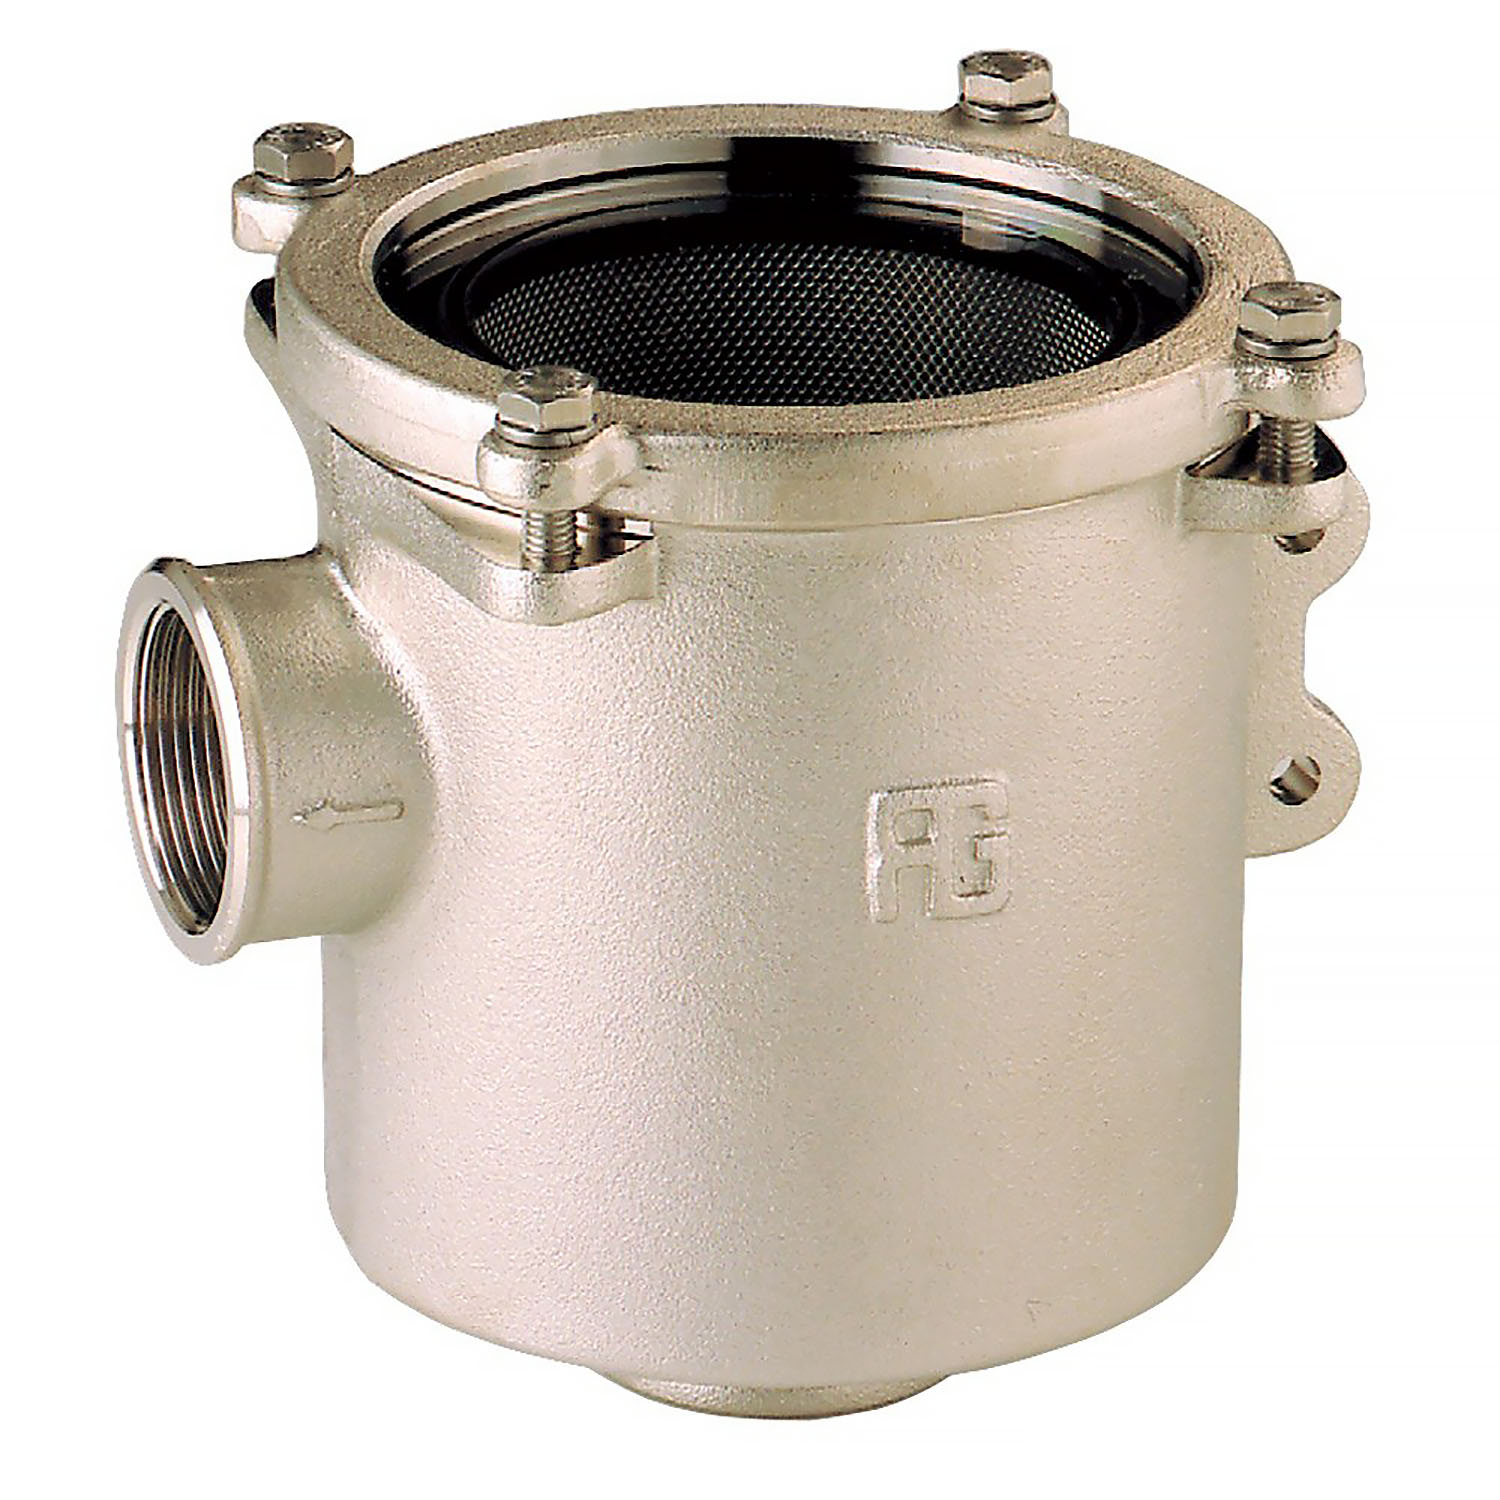 Фильтр водяной системы охлаждения двигателя Guidi Marine 1164 1164#220011 3" 58400 - 184000 л/час